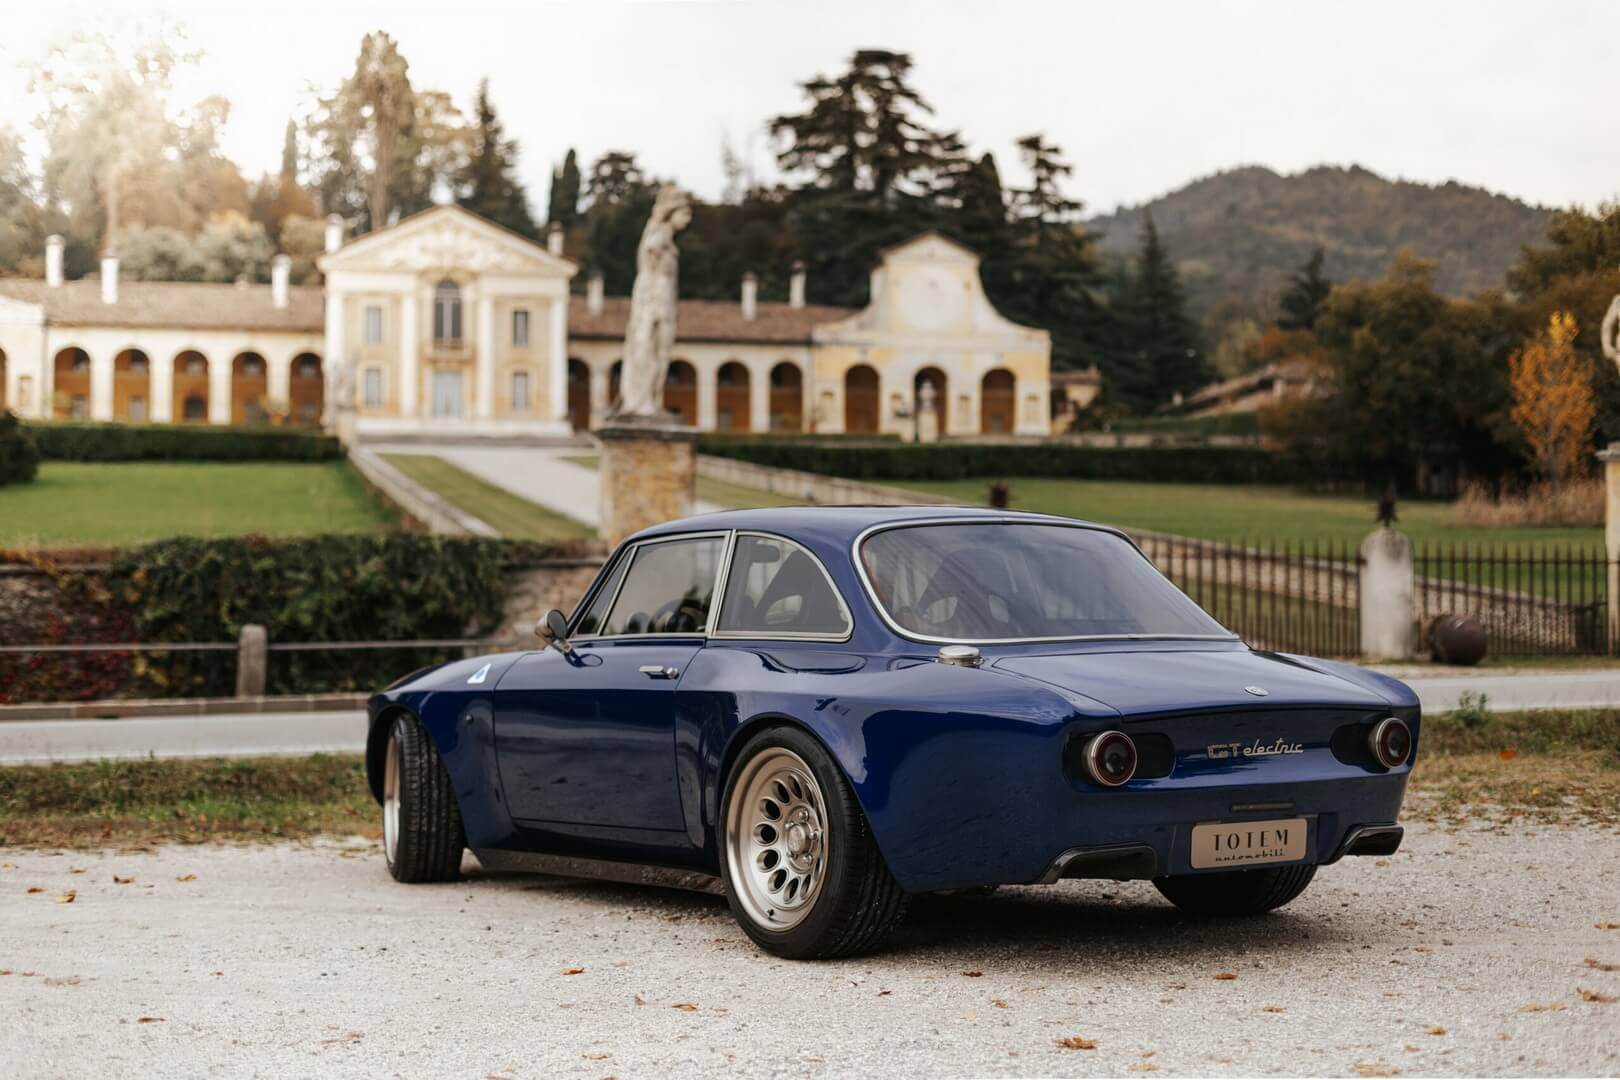 Totem Automobili воплотила в жизнь проект винтажной Alfa Romeo GT Electric 